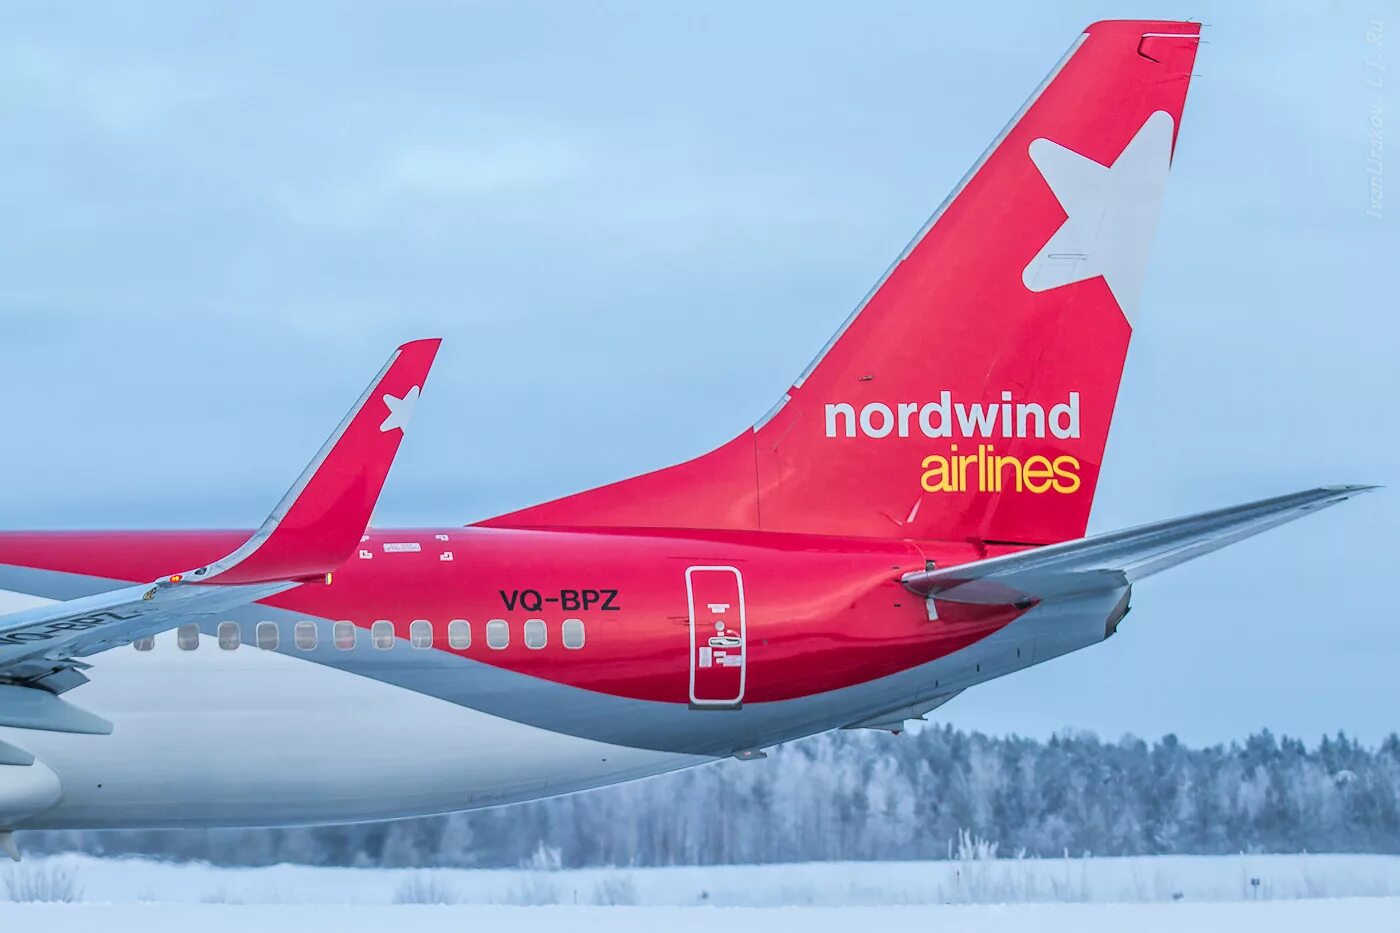 Норд винд авиакомпания купить авиабилет. Боинг 737 Норд Винд. 737-800 Норд Винд. Авиакомпания Nordwind Airlines самолеты. Боинг 737 ред Вингс.